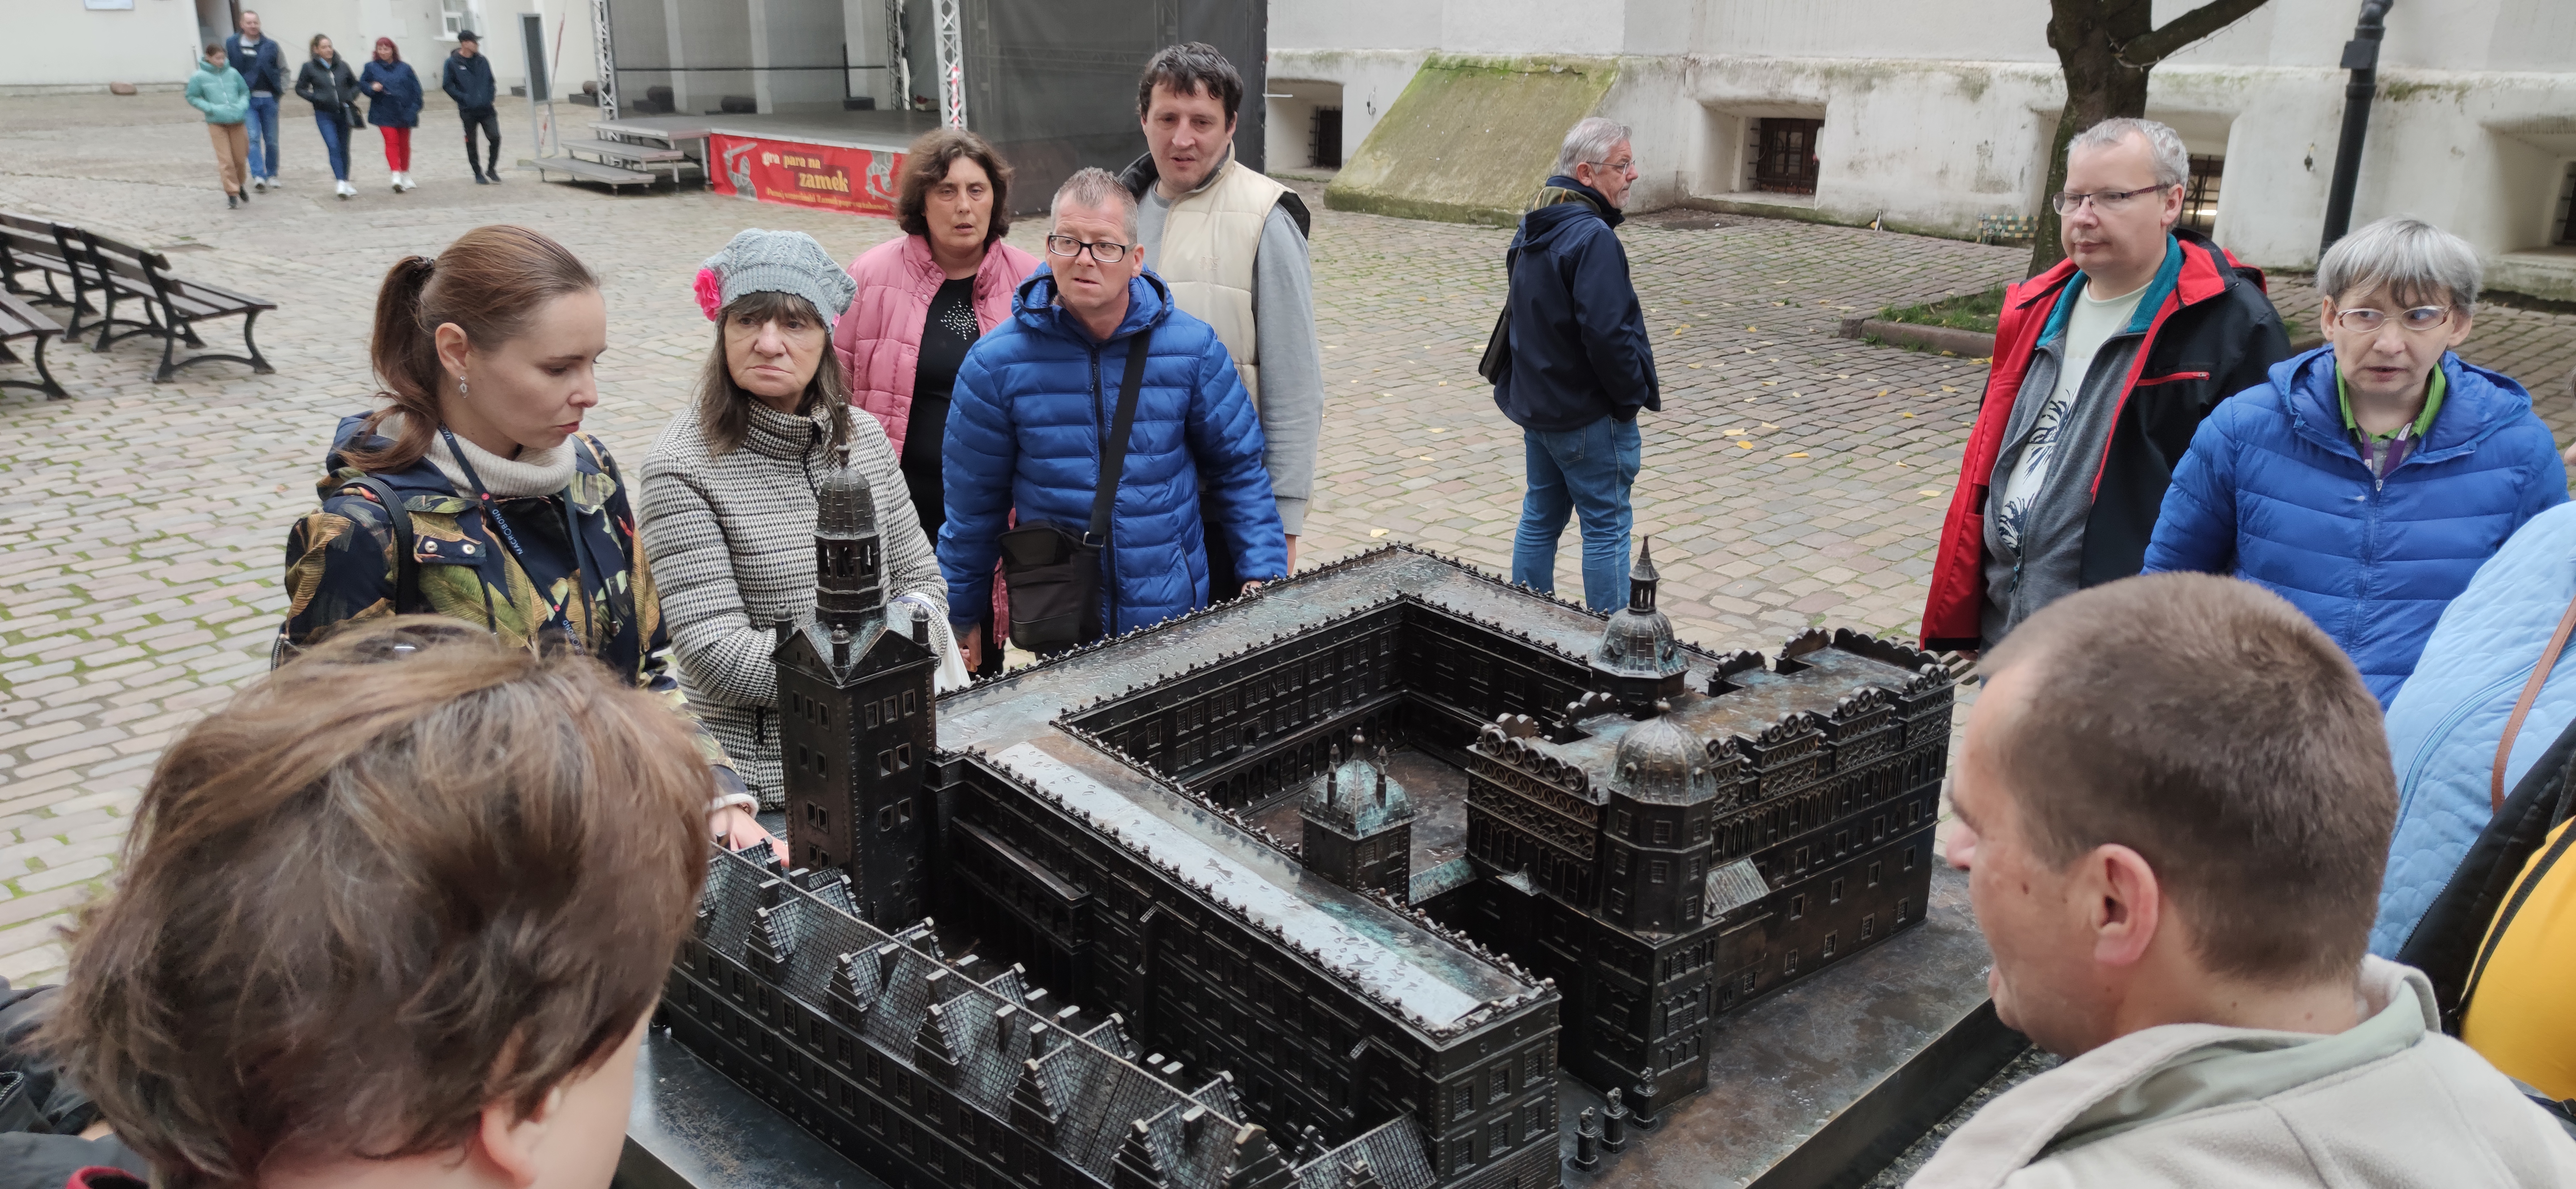 Grupa osób stoi przy żelaznej makiecie zamku.